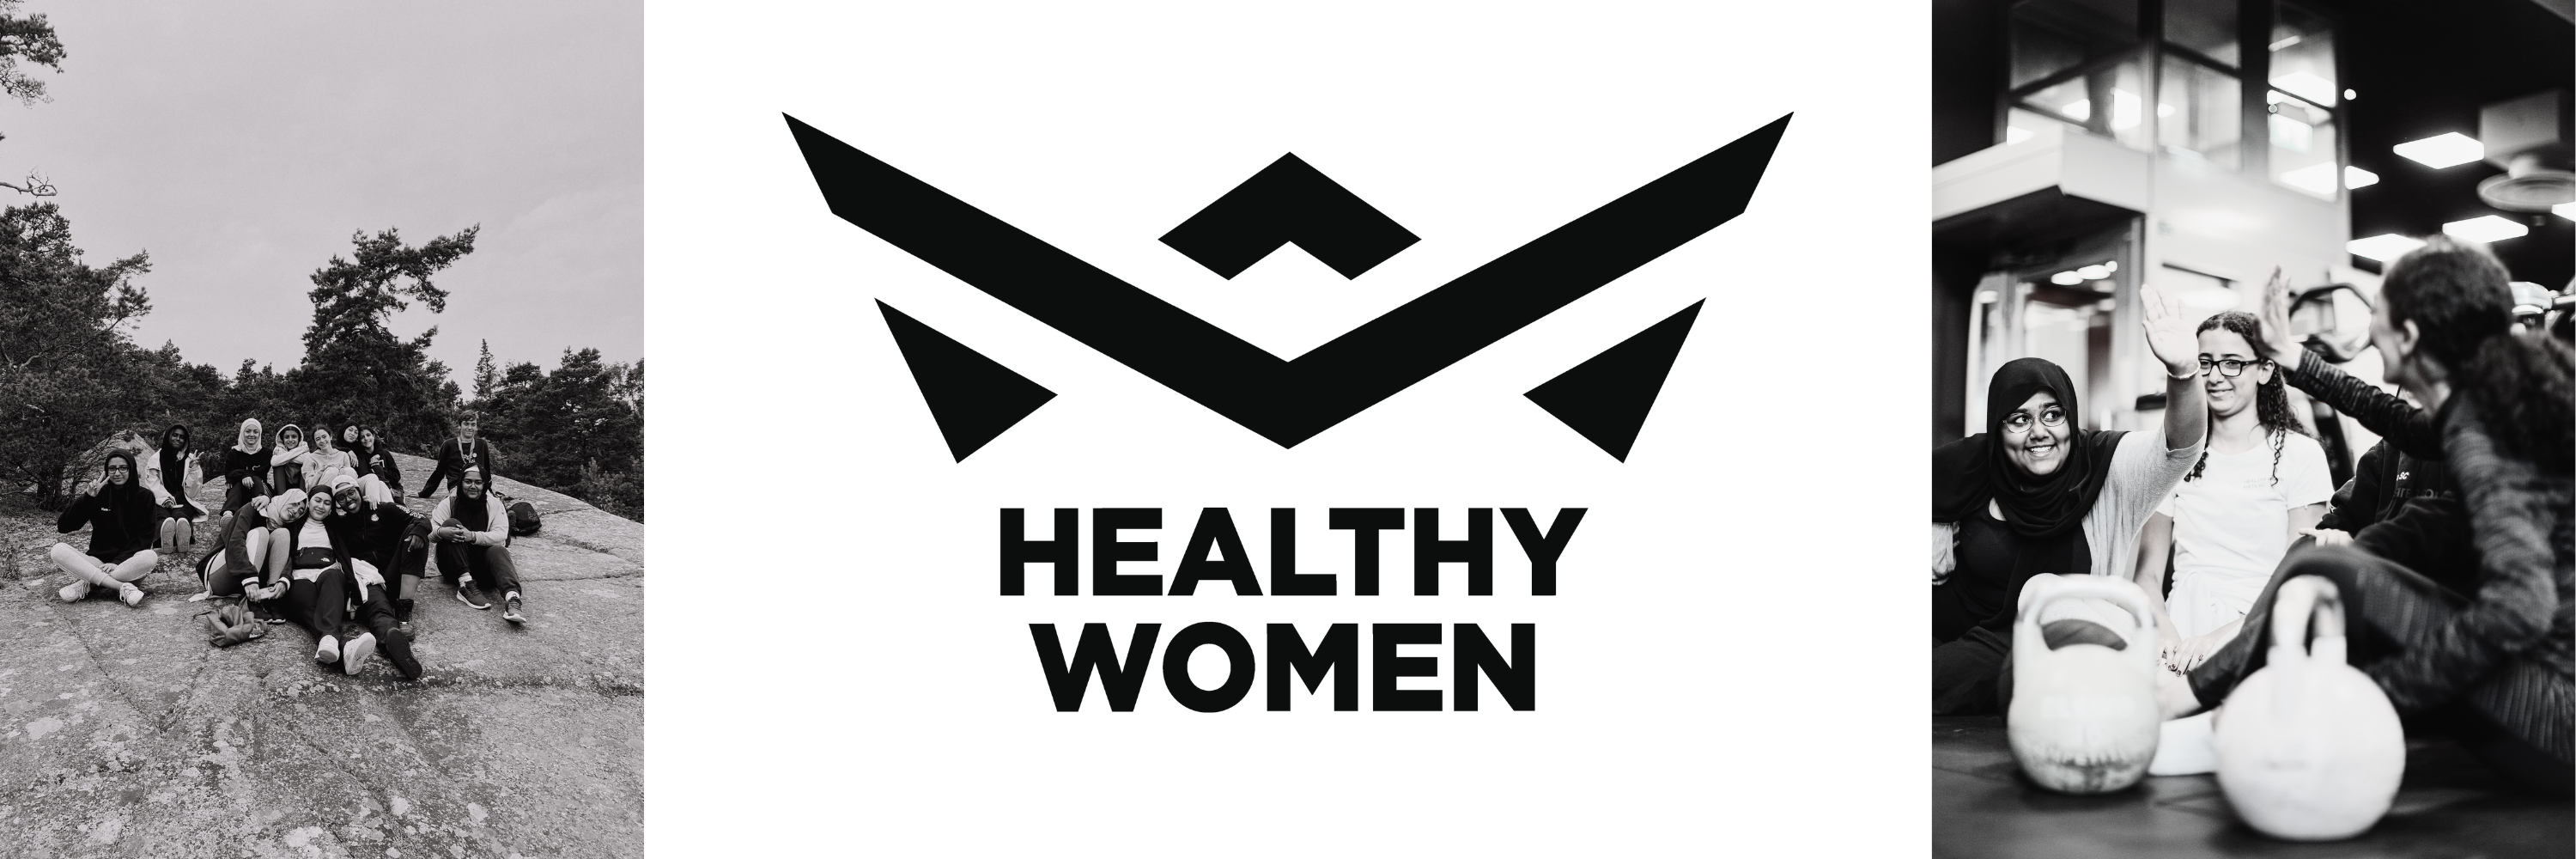 Healthy women